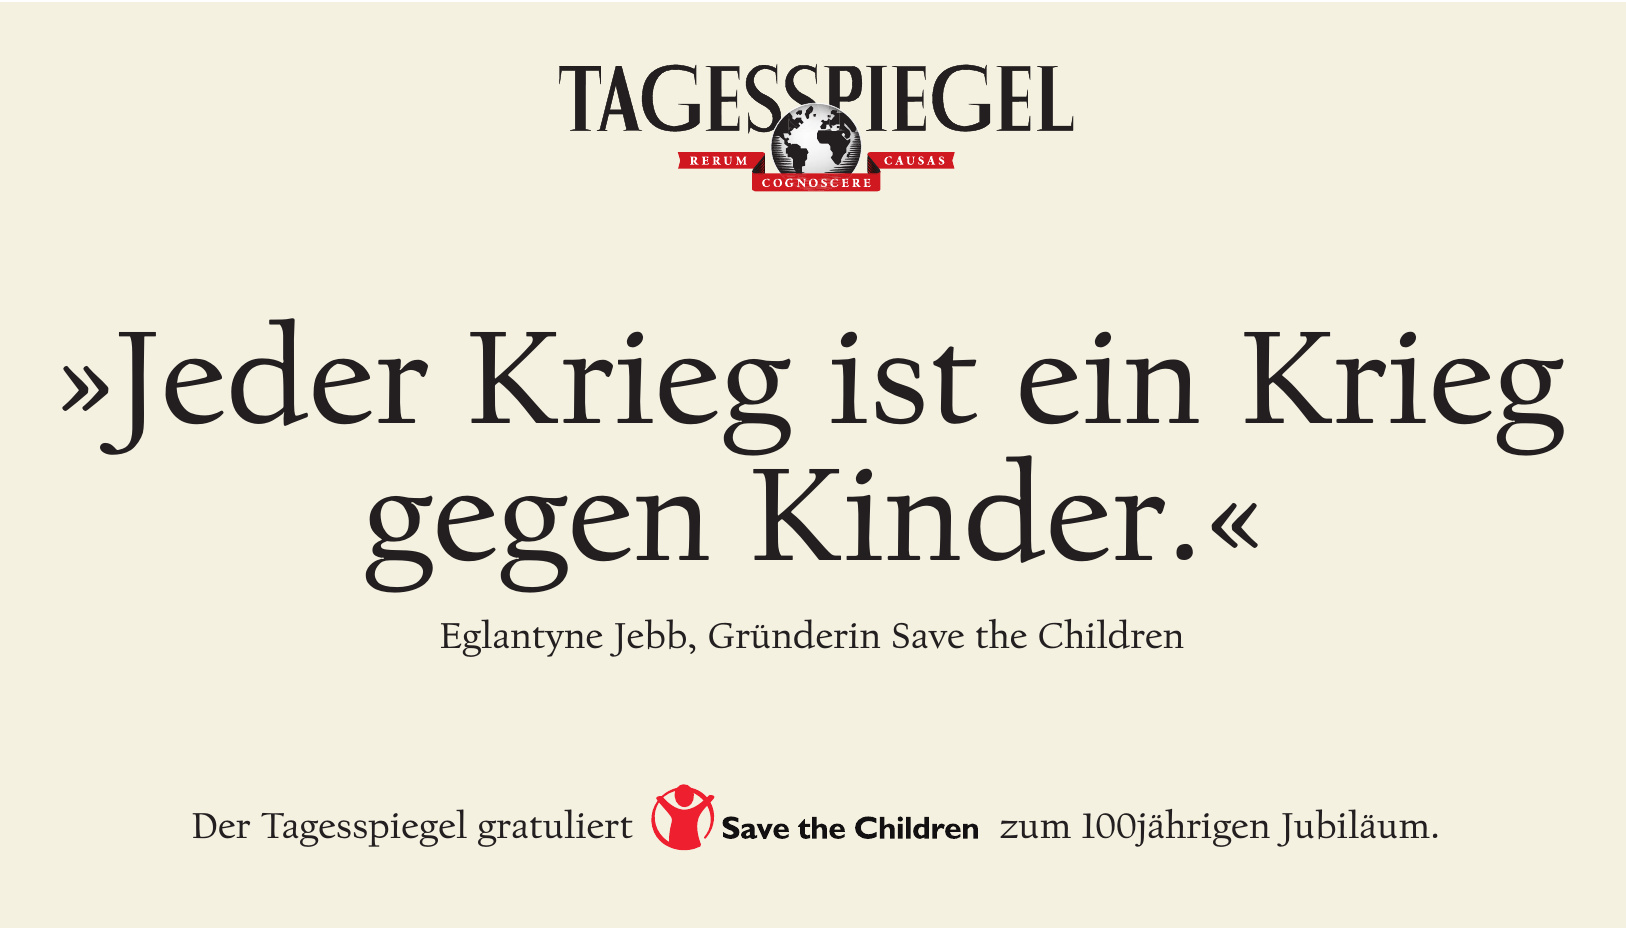 Der Tagesspiegel gratuliert Save the Children zum 100jährigen Jubiläum.